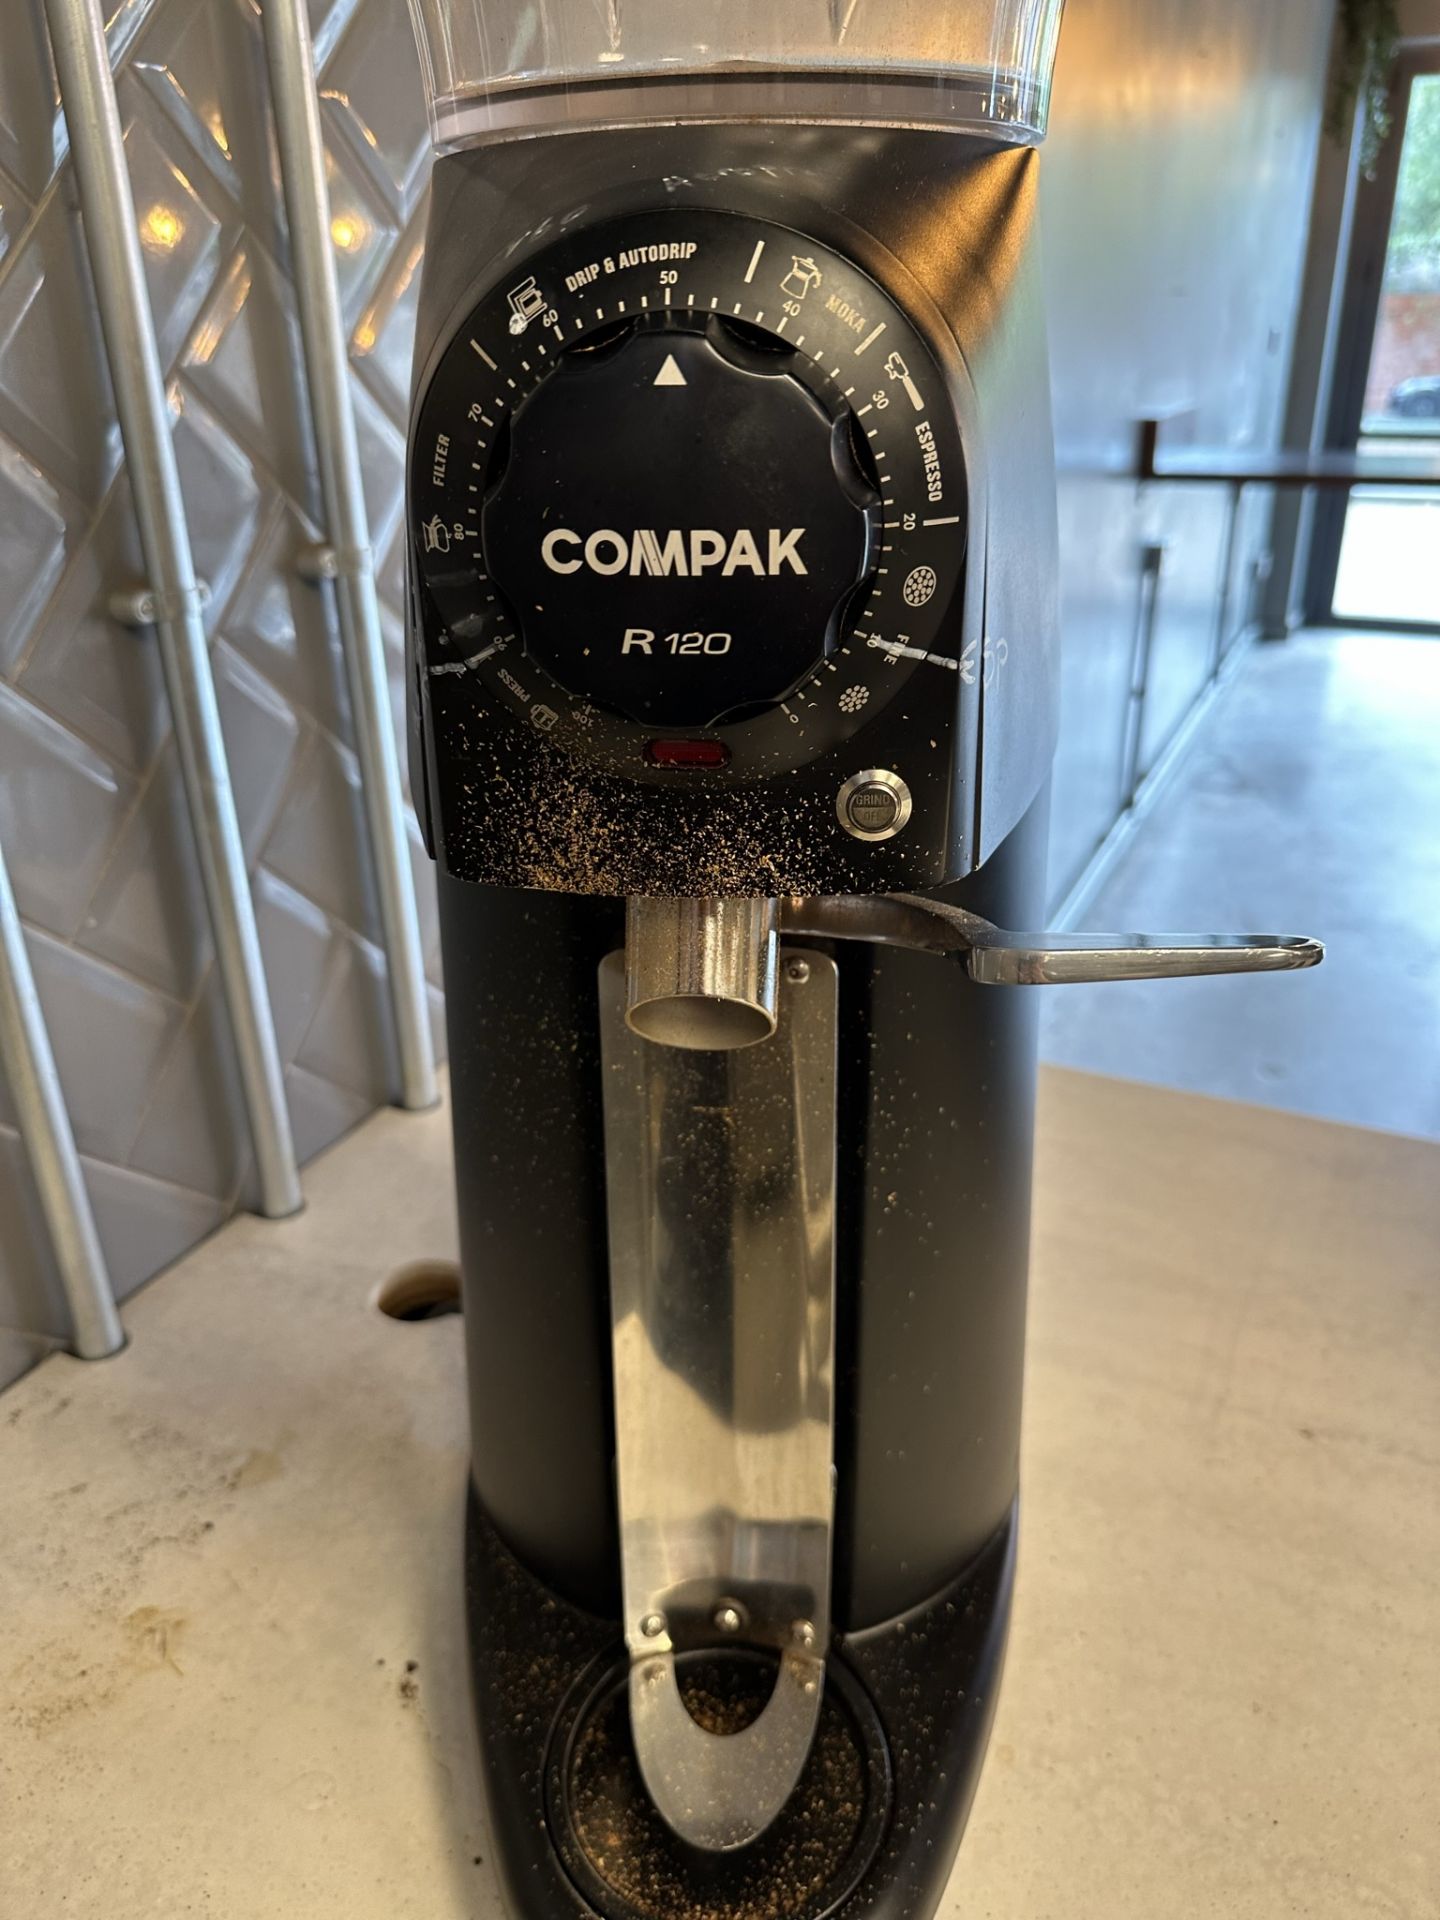 Compak R120 Industrial Coffee Grinder - Bild 2 aus 4